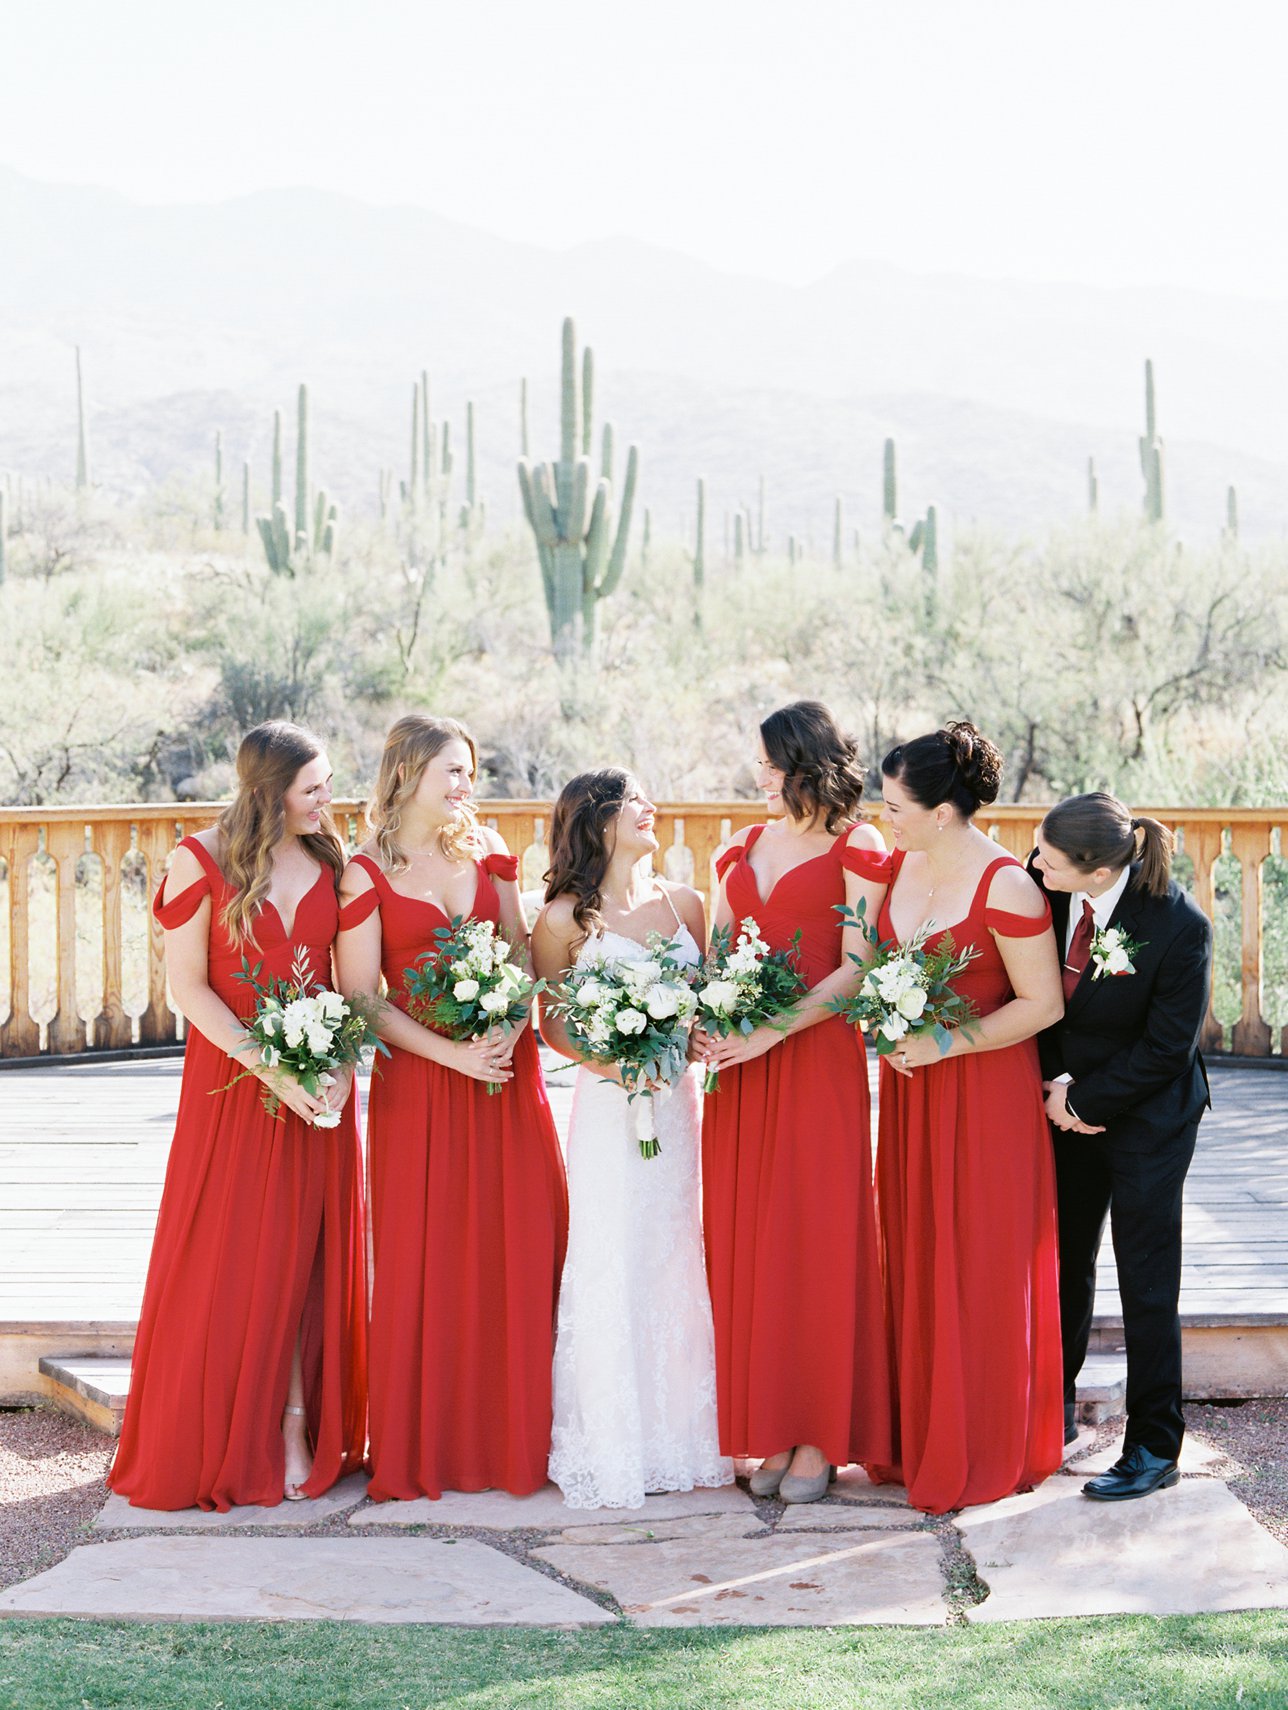 Tanque Verde Ranch wedding photos - Rachel Solomon Photography